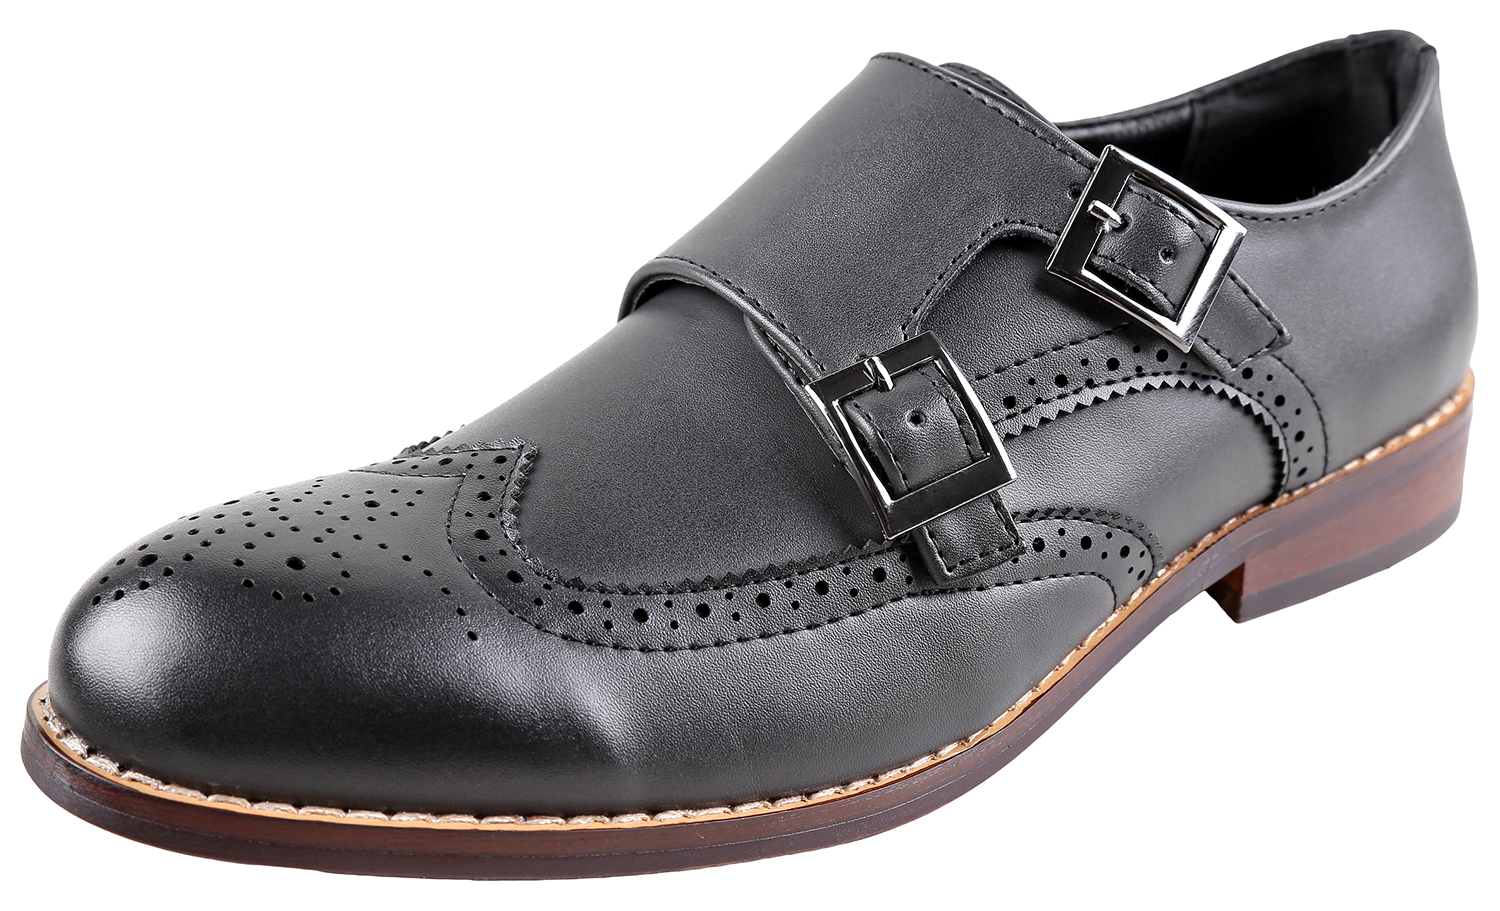 Urban Fox Allen Men's Dress Shoe | Double Monk Strap | Brogue | Wingtip Shoes for Men | Black 9 M US - image 1 of 7